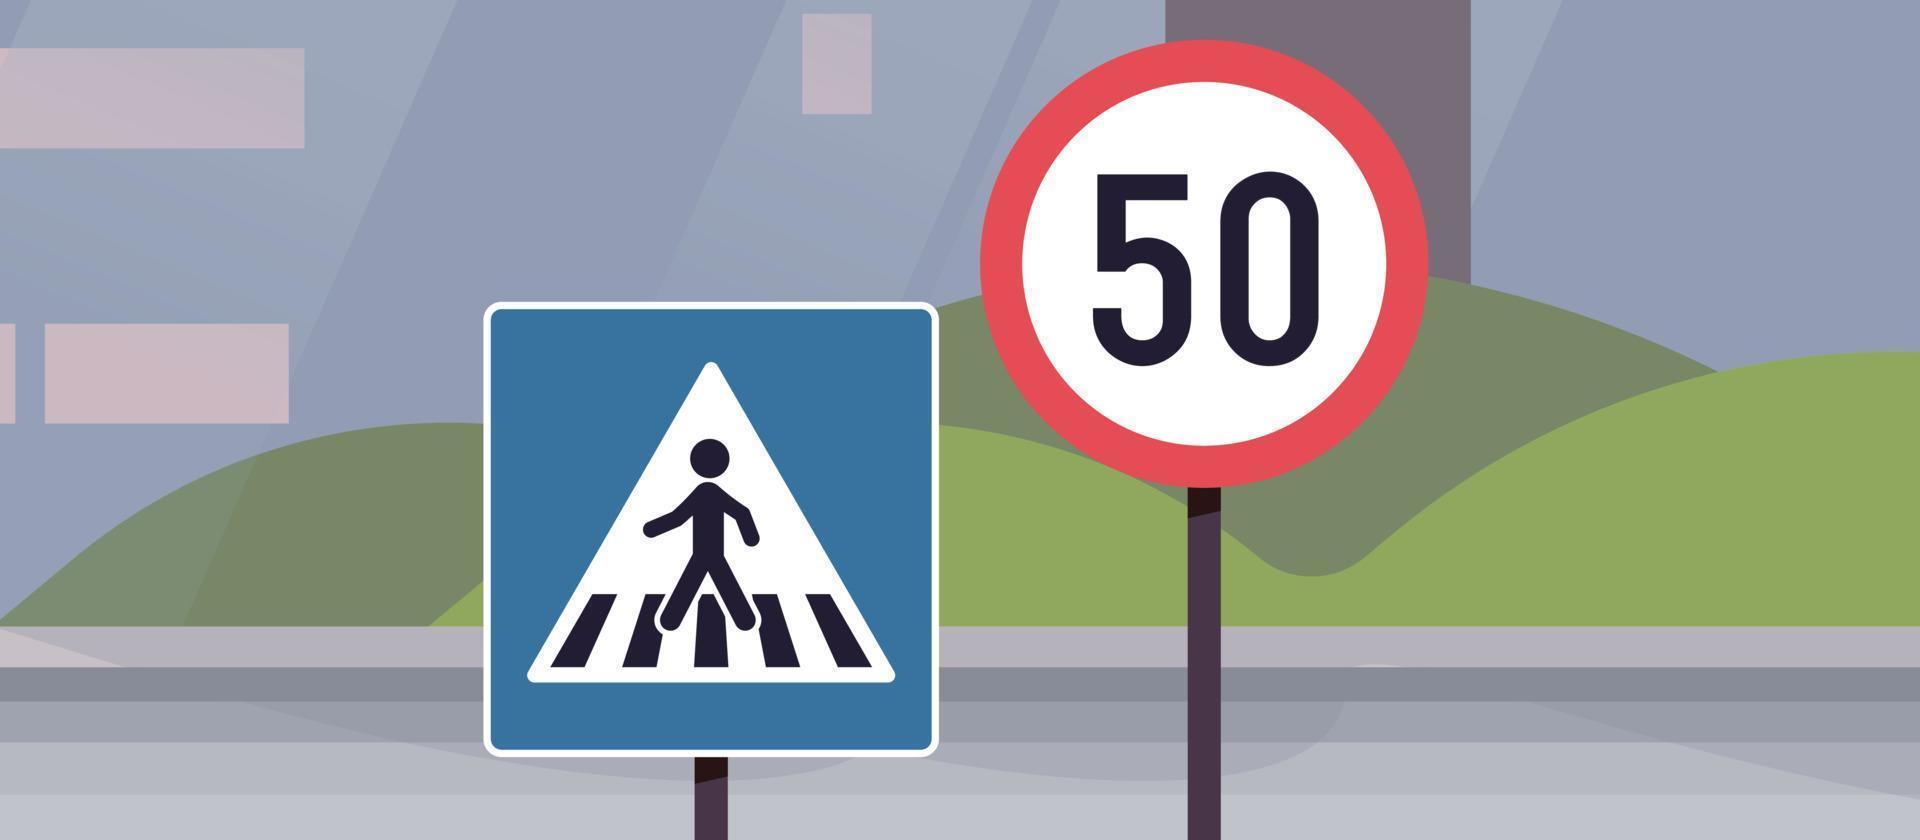 sinais de trânsito na estrada da cidade e ilustração em vetor plano conceito simples de transporte.